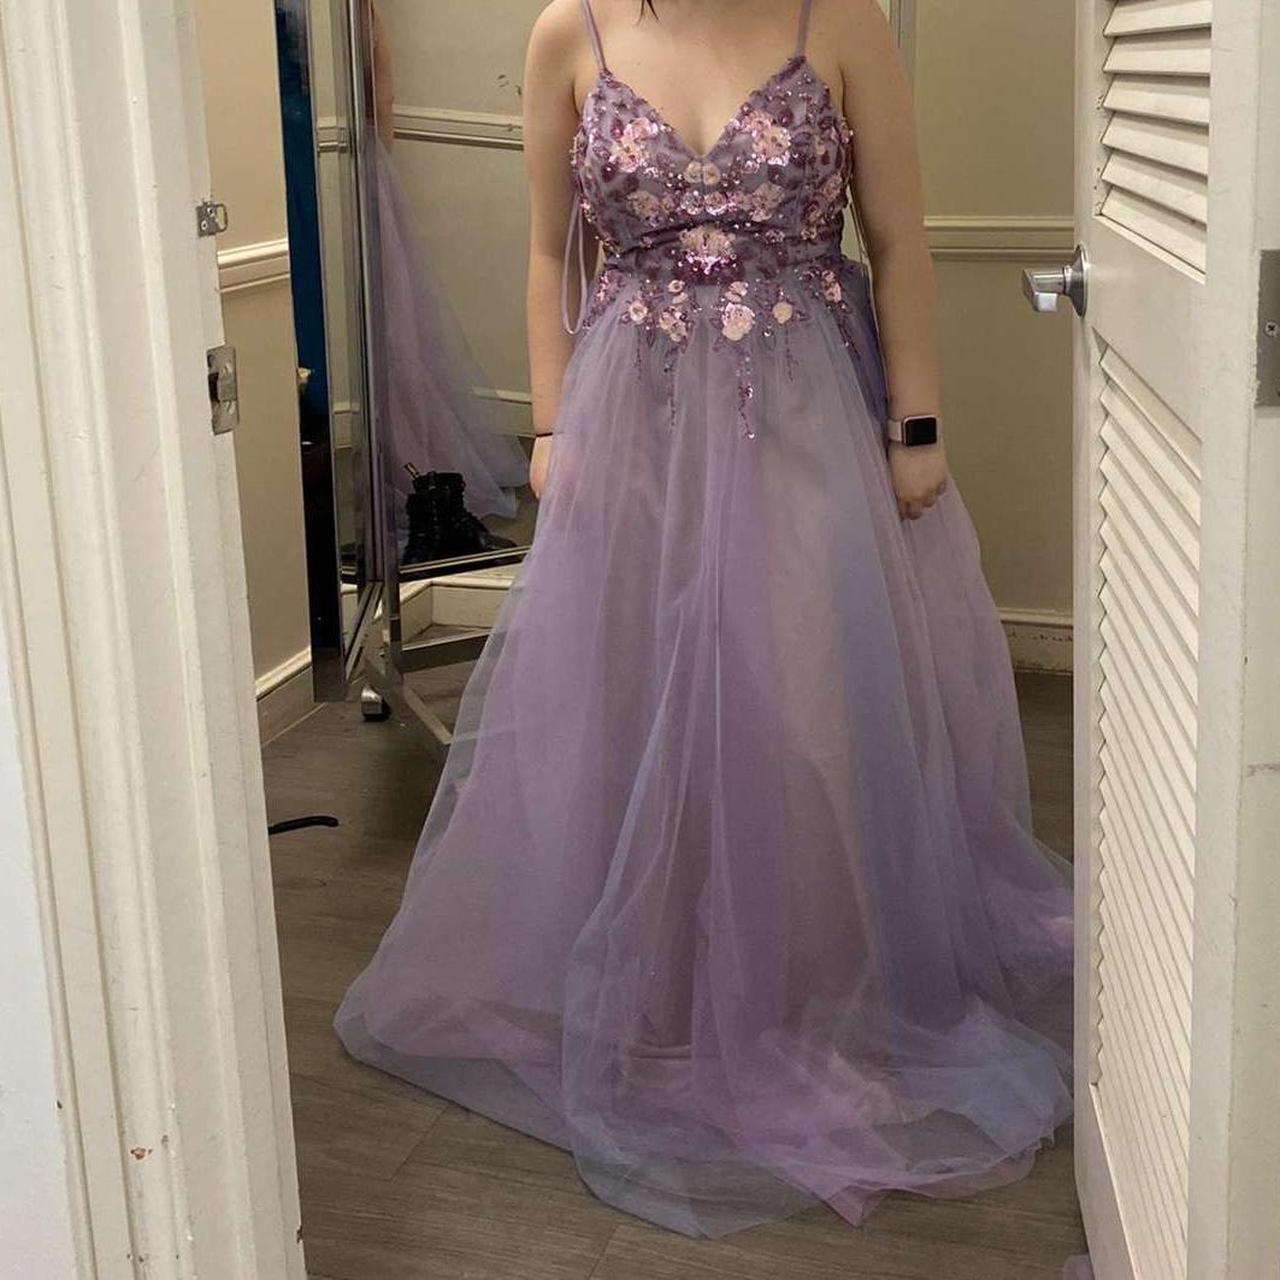 Macy's Women's Purple Dress | Depop